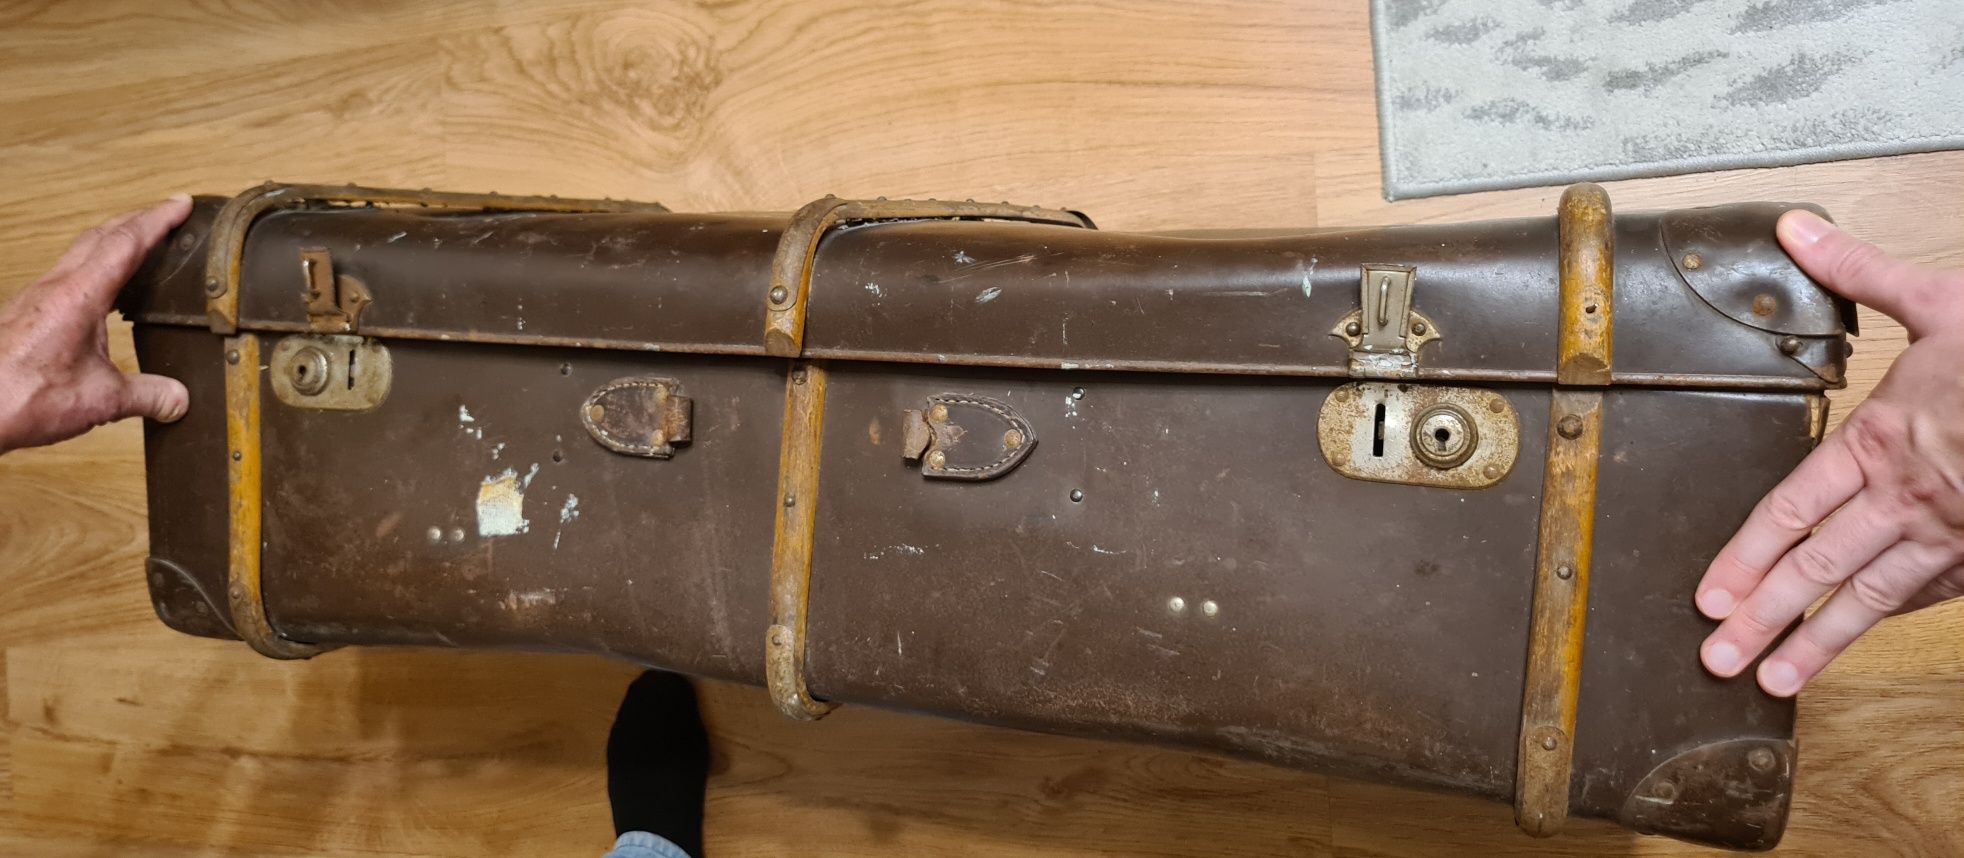 Walizka kufer antyk II wojna światowa